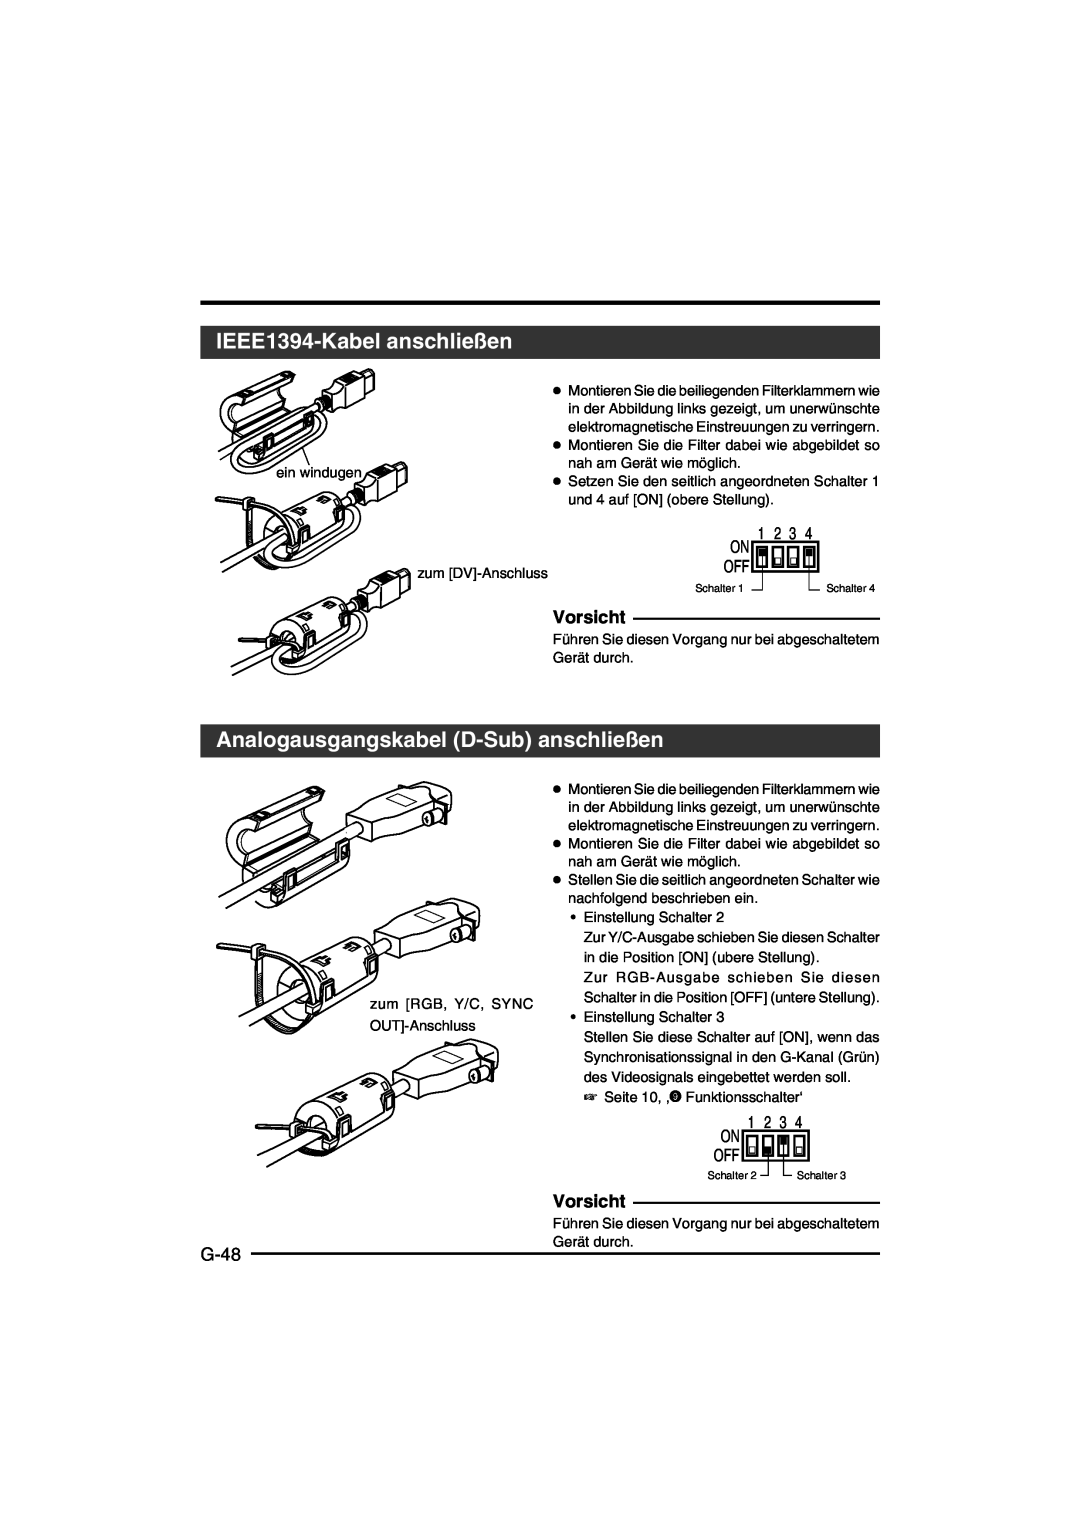 JVC KY-F550E instruction manual IEEE1394-Kabel anschließen, Analogausgangskabel D-Sub anschließen, G-48, Vorsicht 